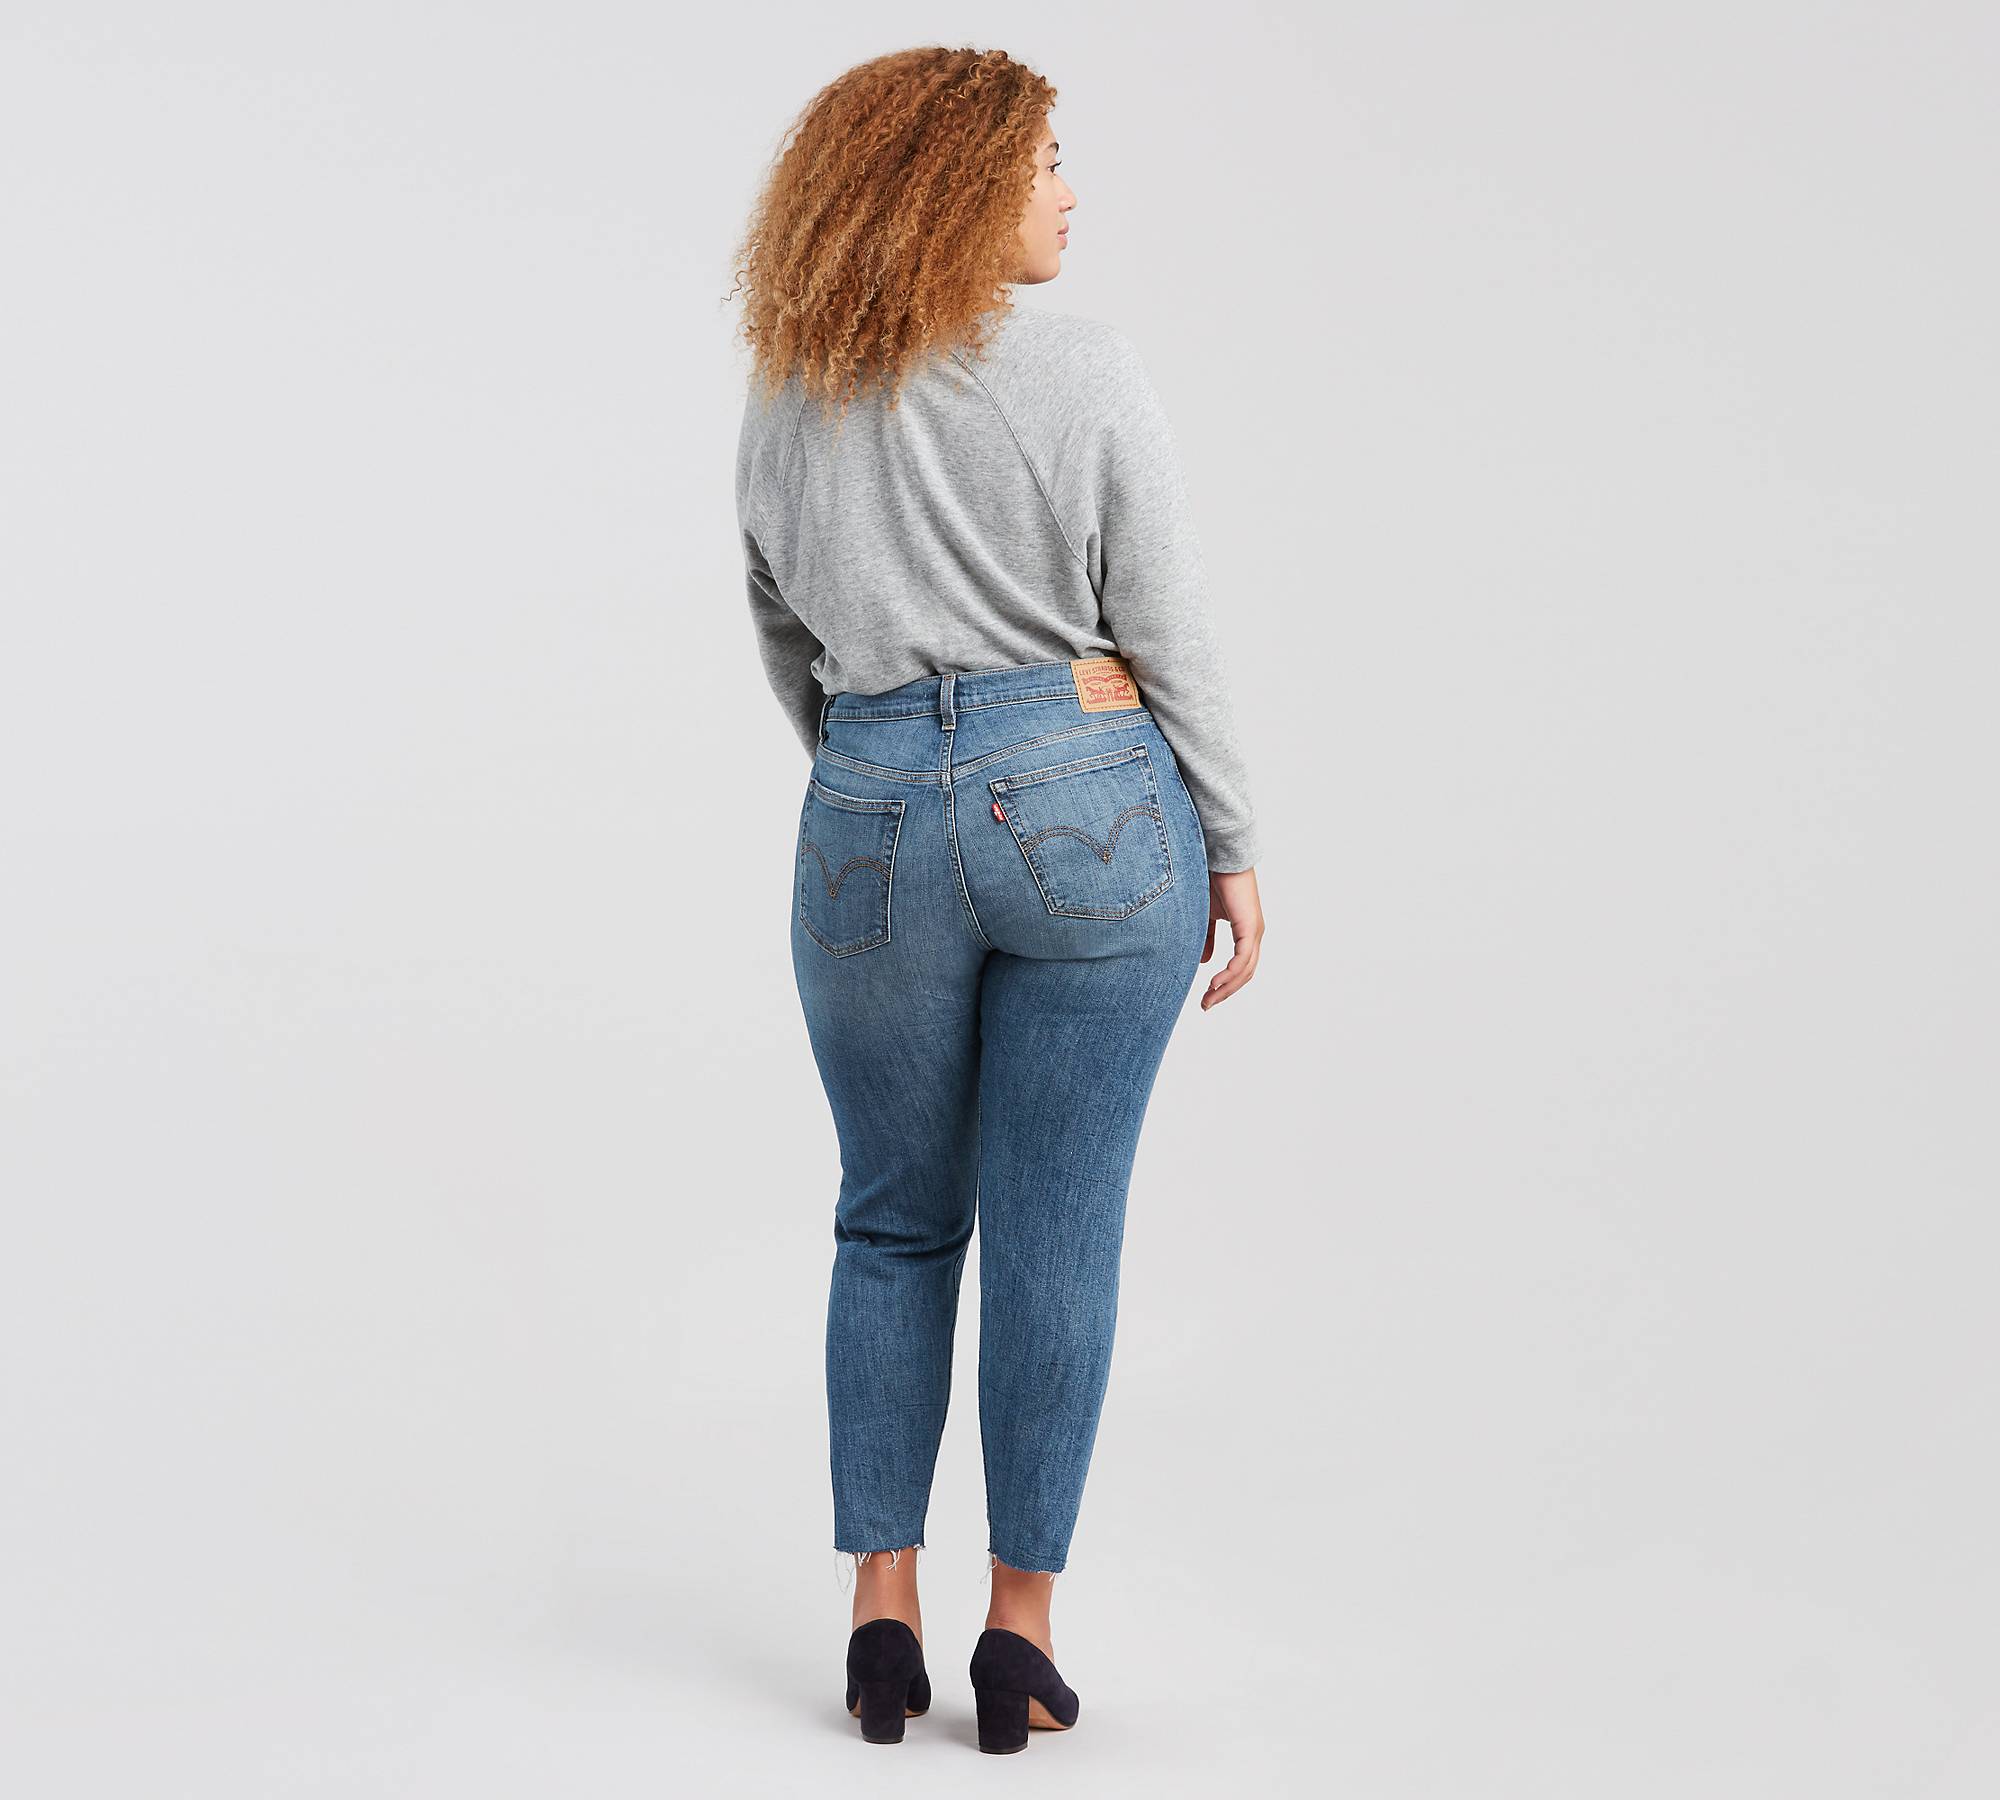 Wedgie Fit Women's Jeans (plus Size) - Medium Wash